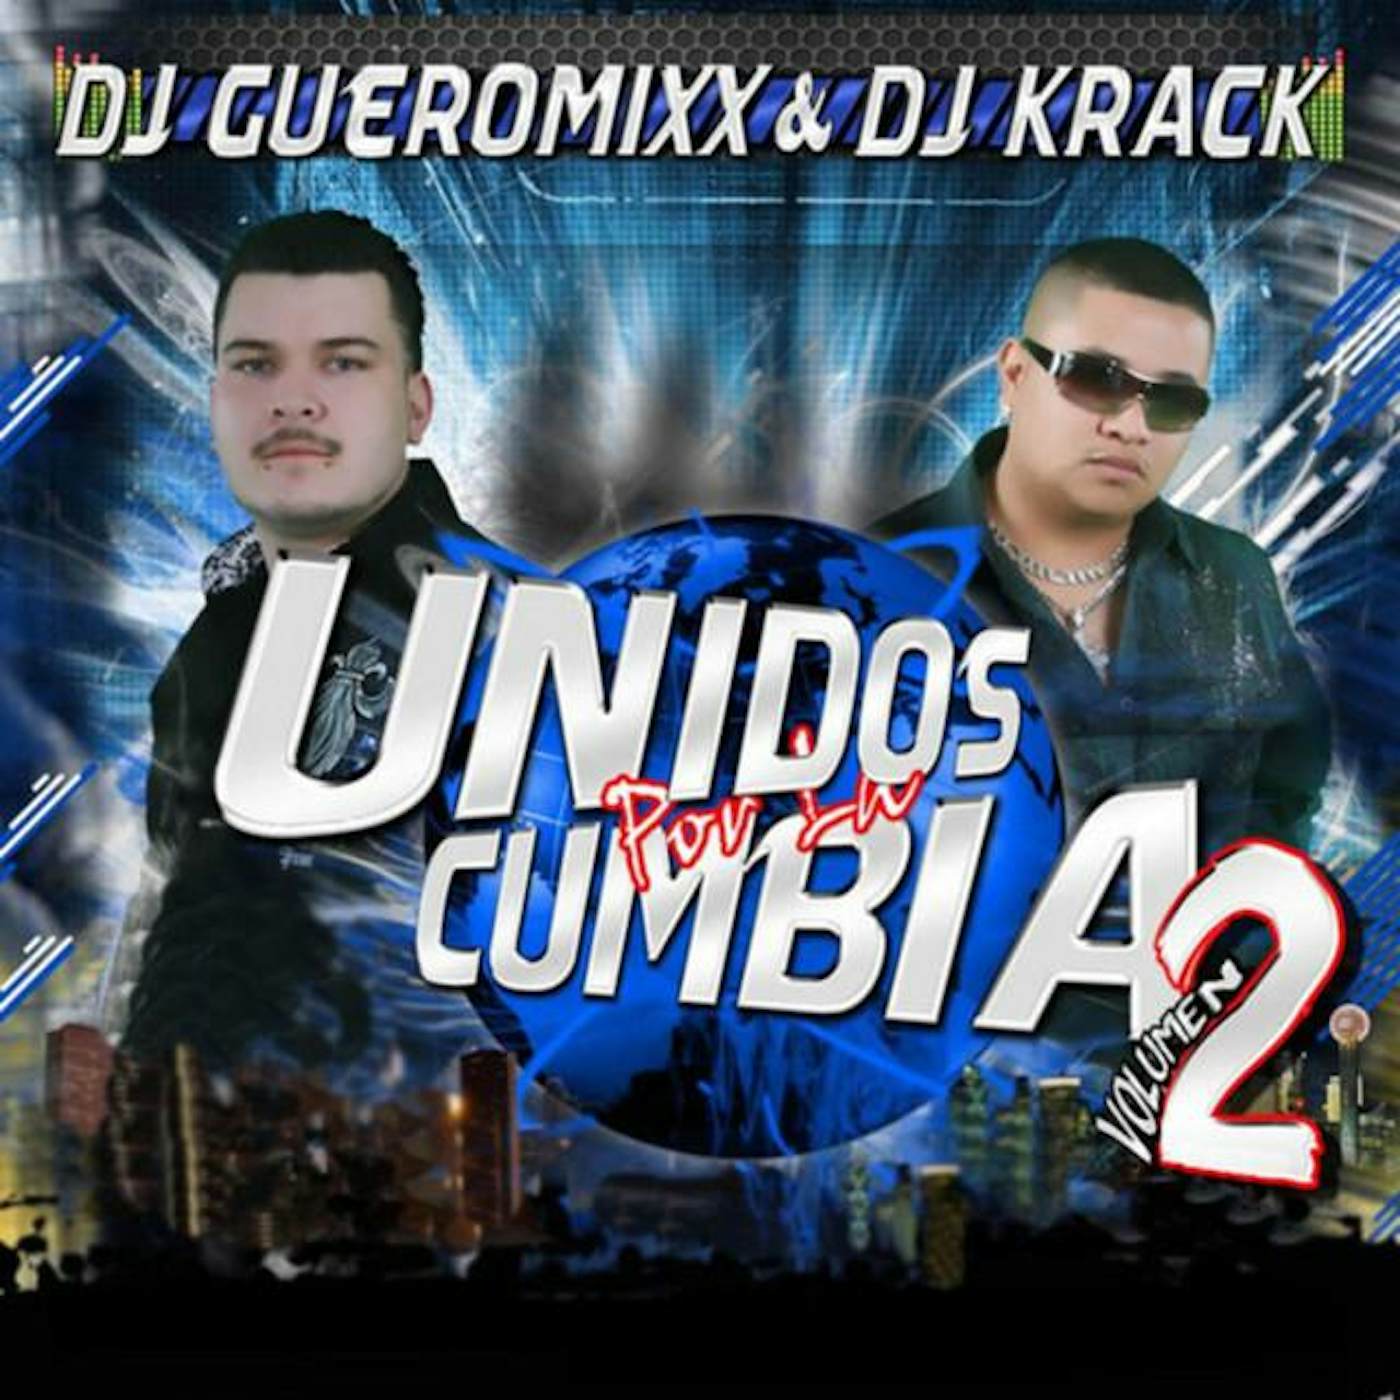 DJ Gueromixx